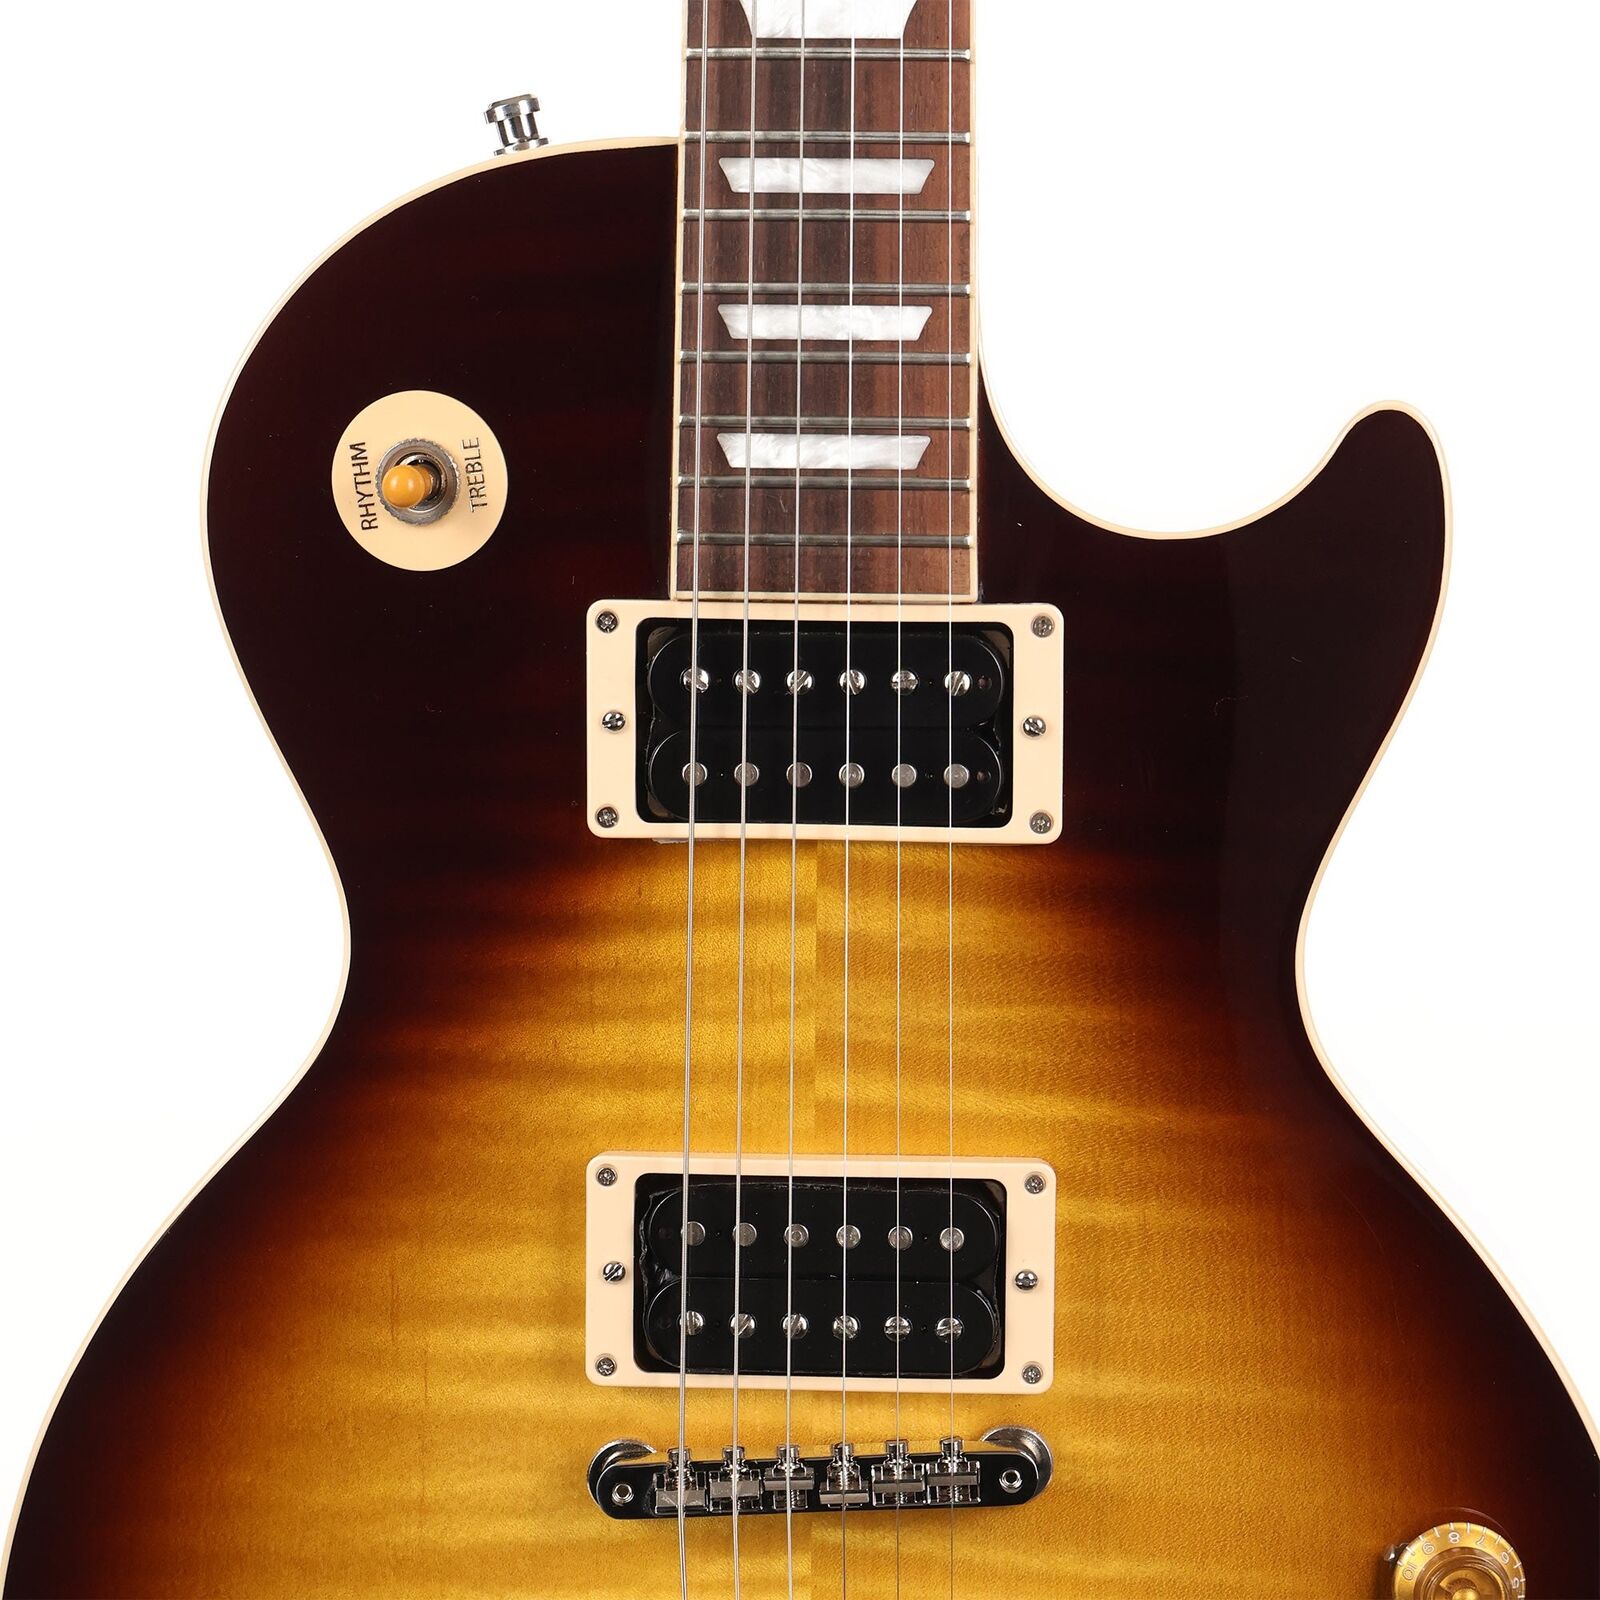 Slash Paul Standard listopadowy gitarę serdeczną jako ta sama na zdjęciach